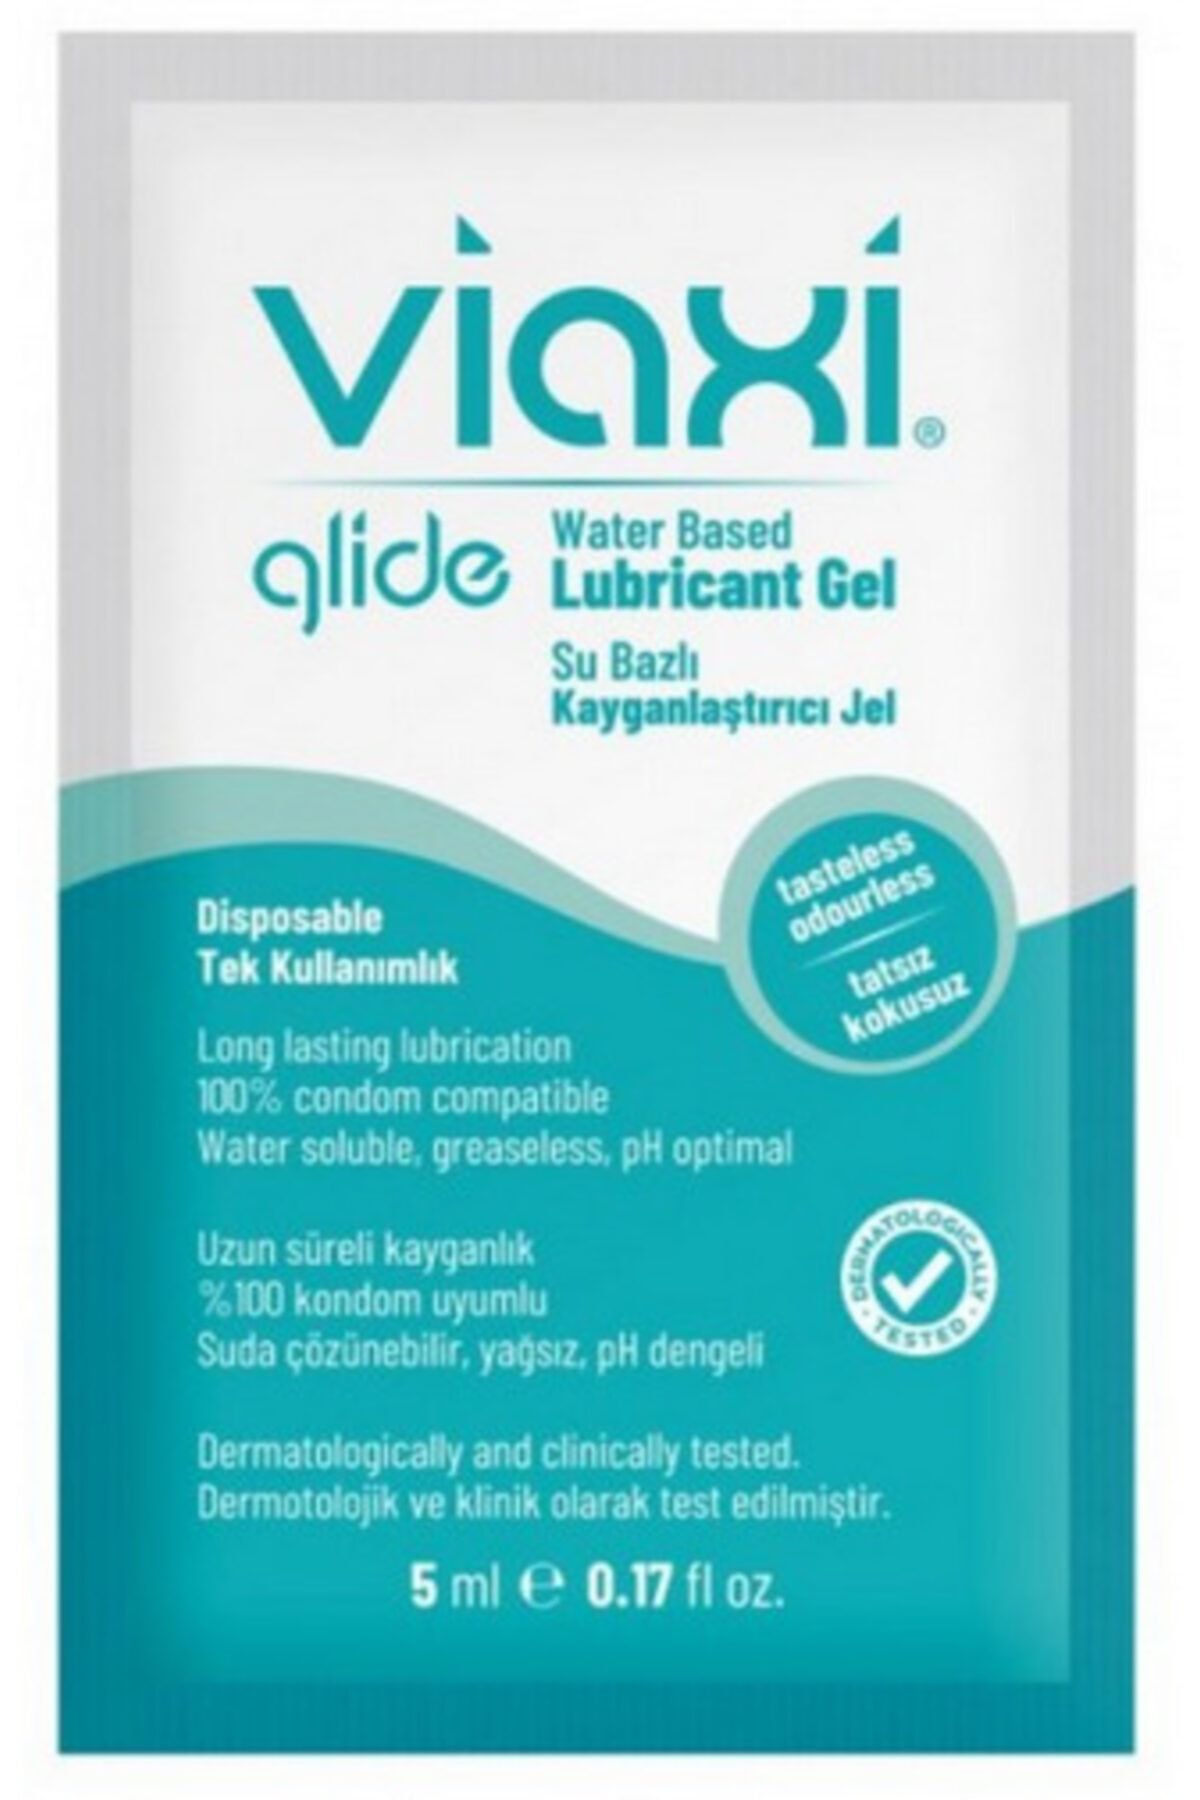 Viaxi Glide Su Bazlı Kayganlaştırıcı Jel Sade 5 ml